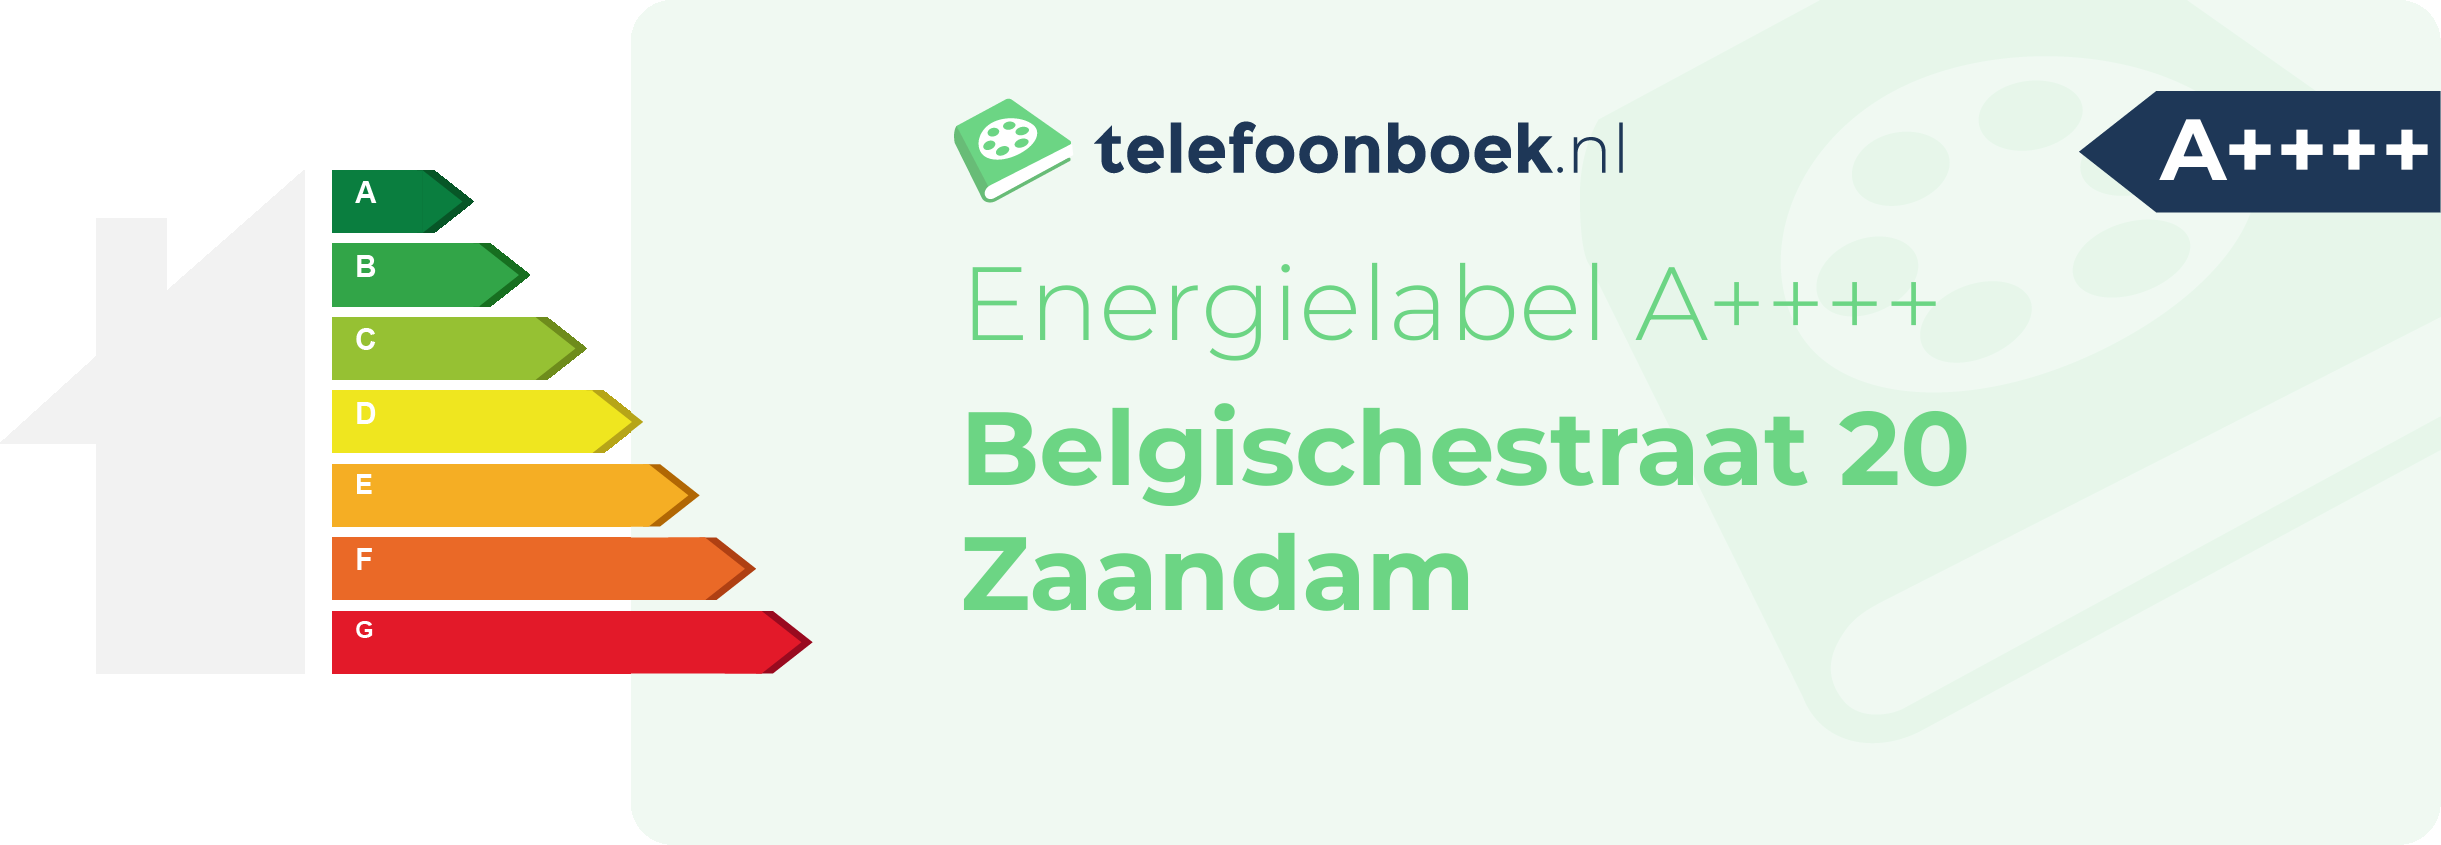 Energielabel Belgischestraat 20 Zaandam